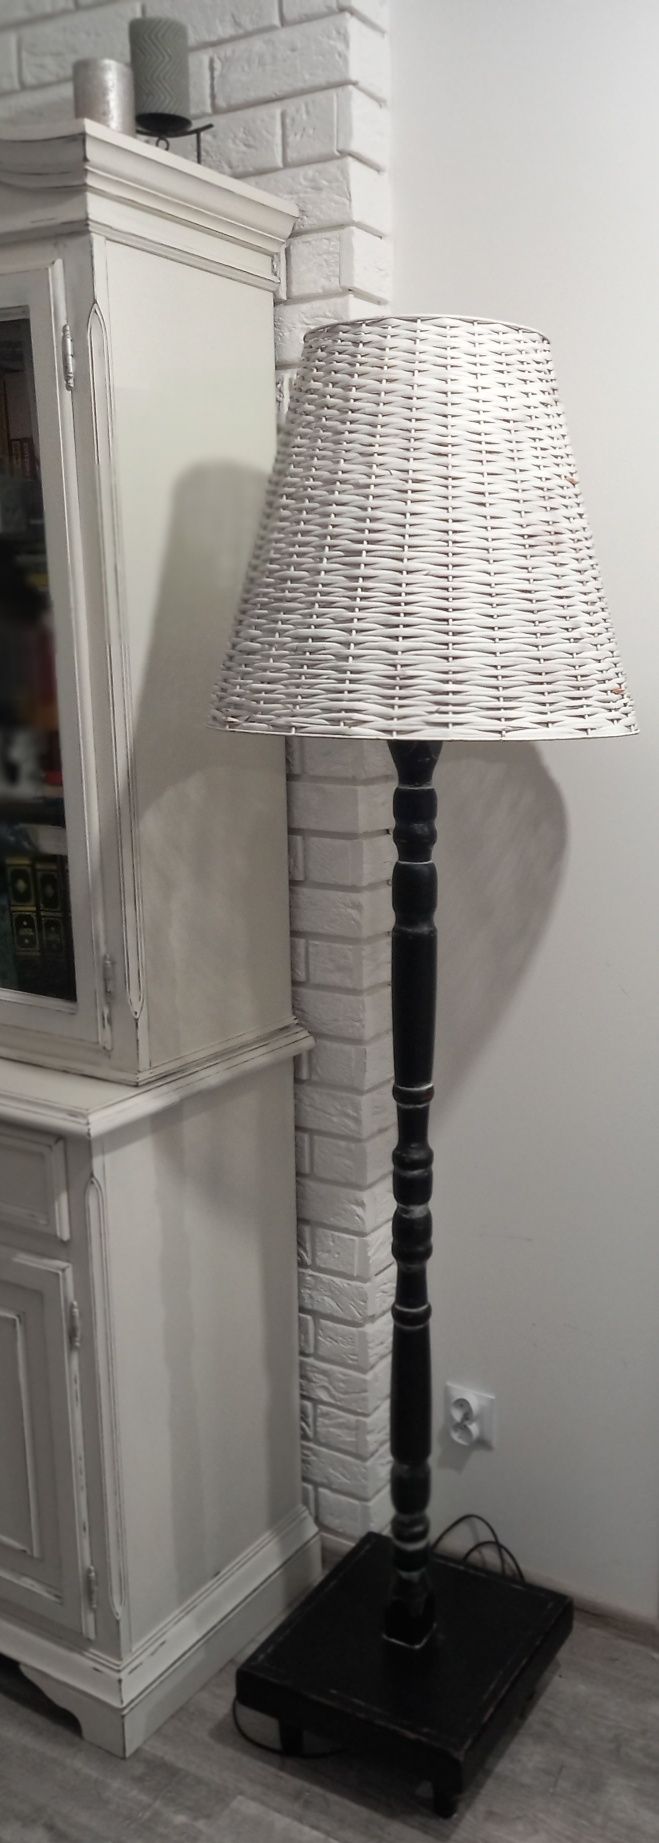 Lampa podlogowa po renowacji